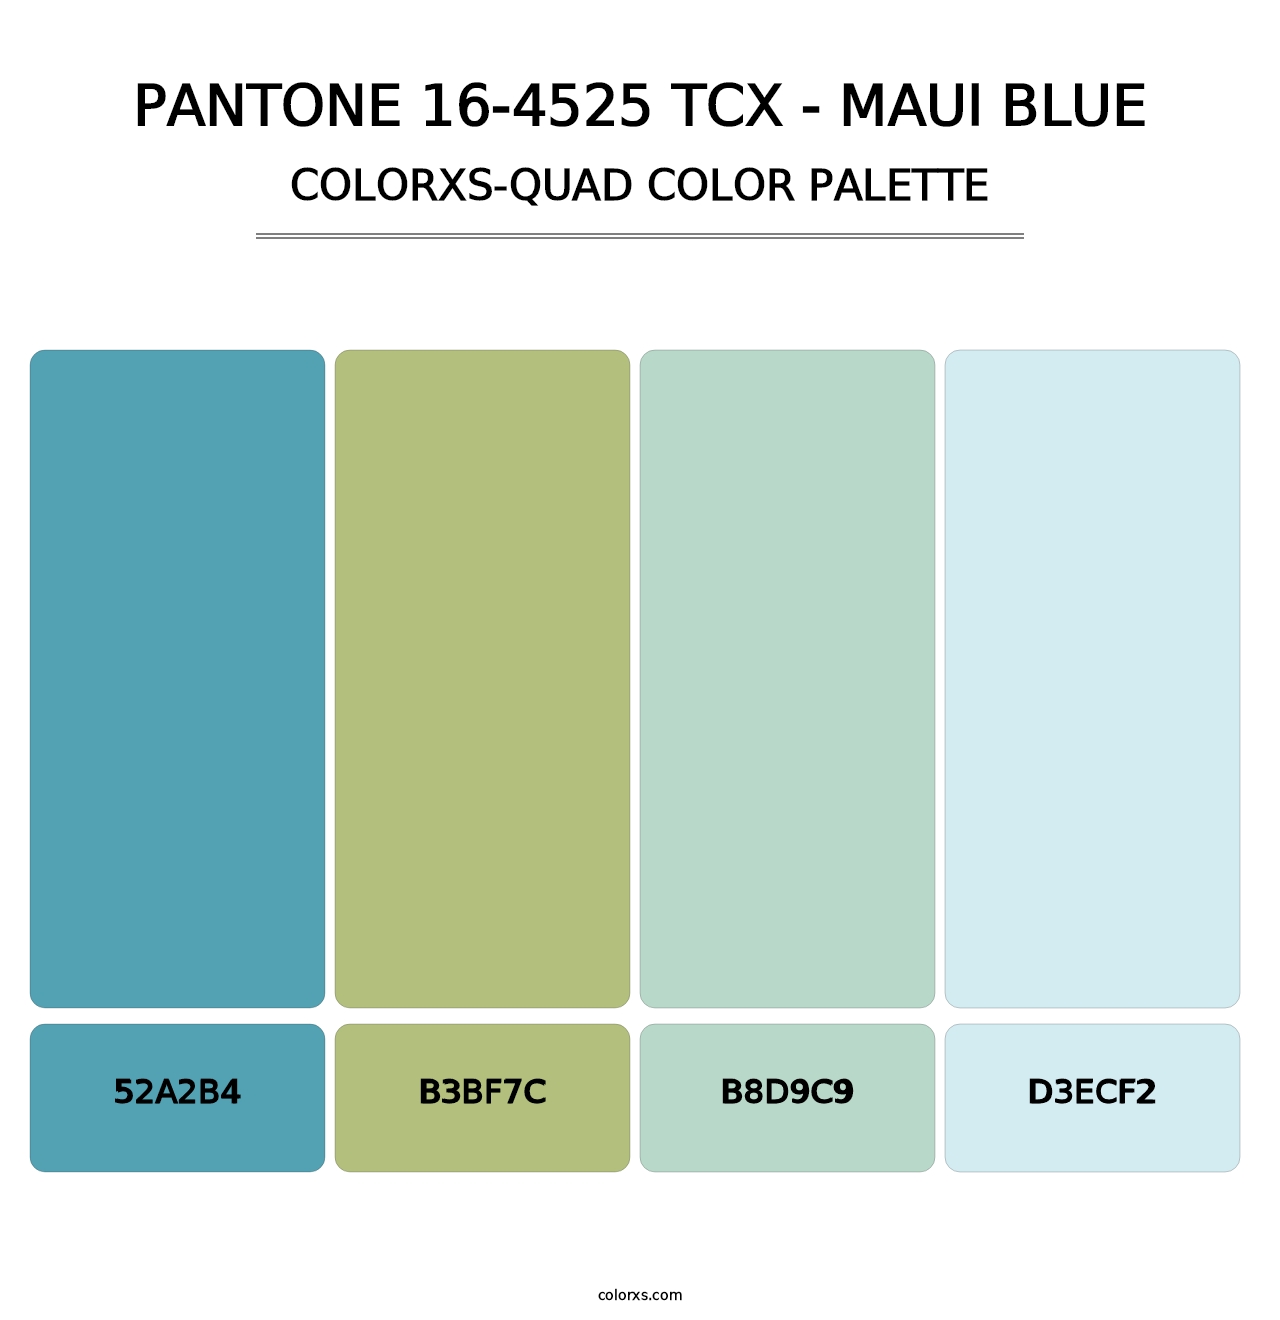 PANTONE 16-4525 TCX - Maui Blue - Colorxs Quad Palette